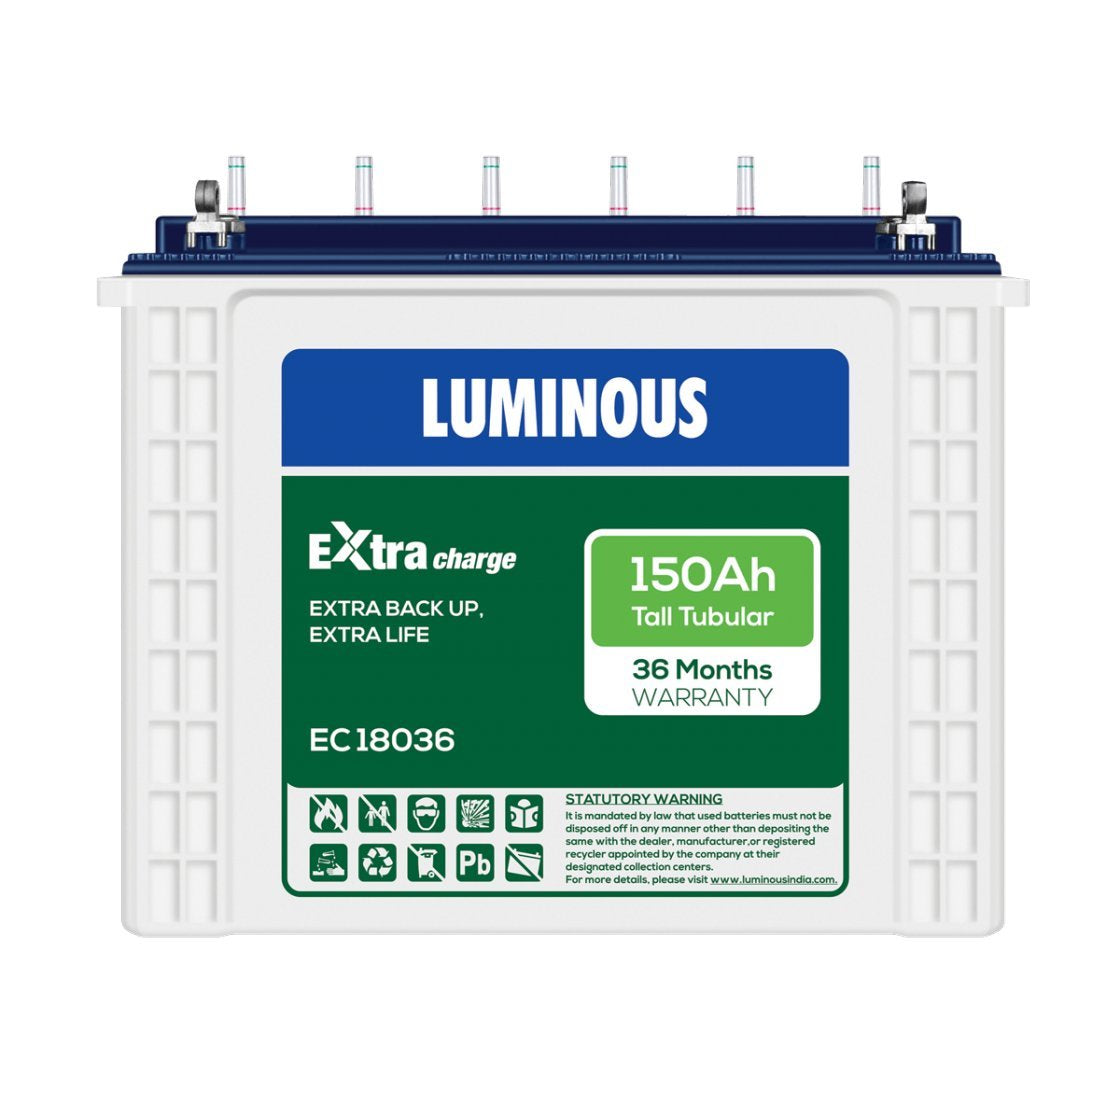 Luminous Inverter battery 150Ah - Ec18036 Tall Tubular